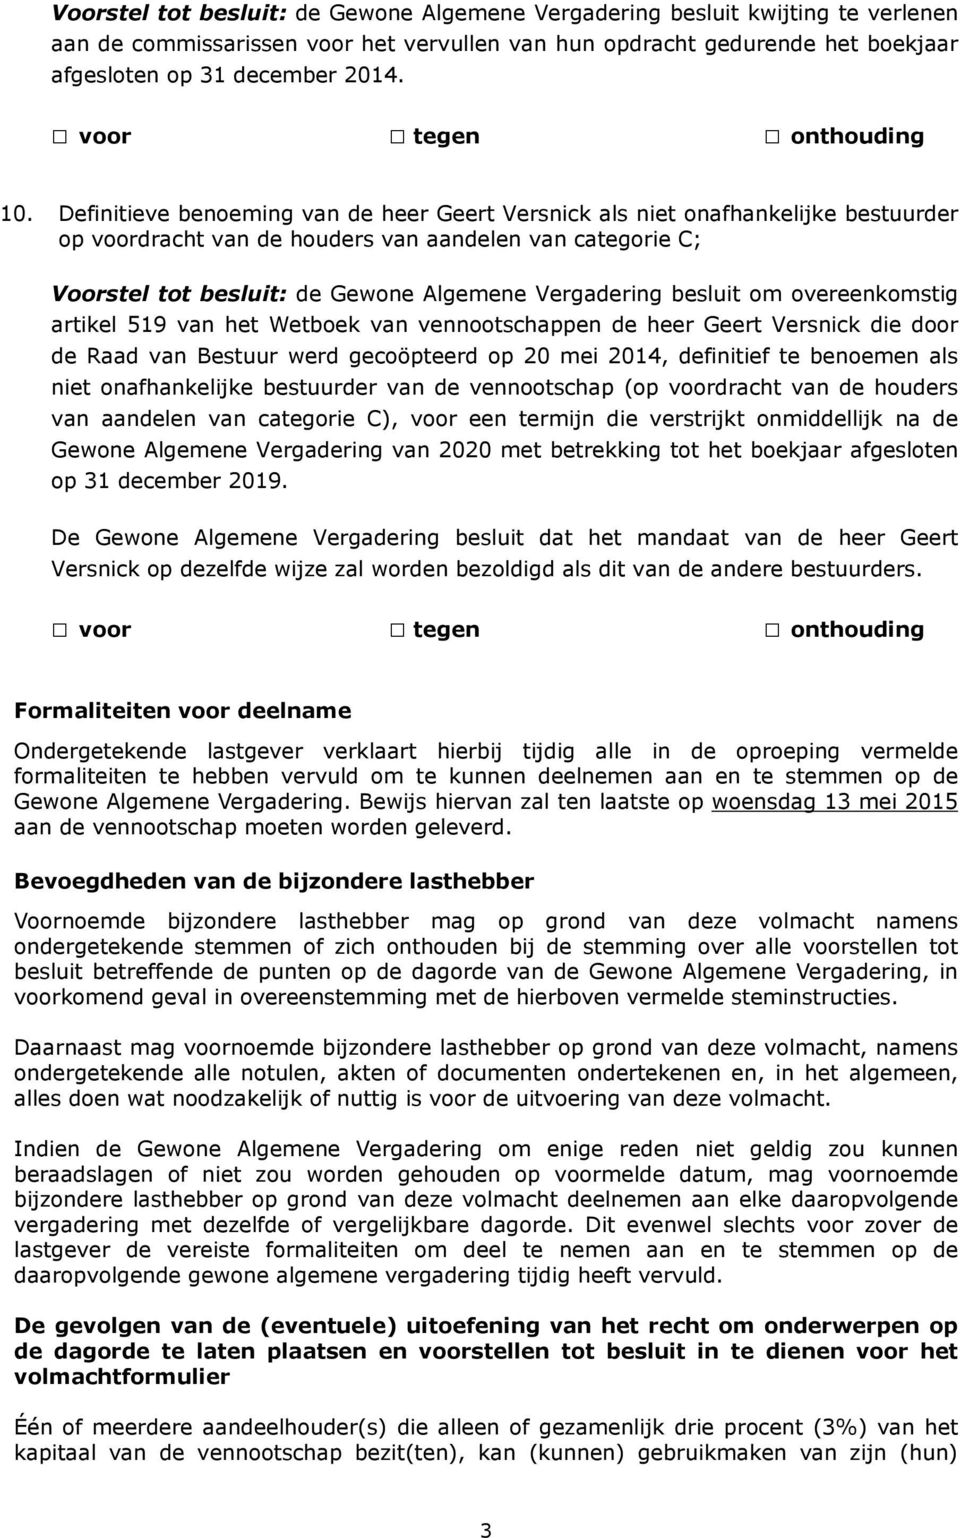 besluit om overeenkomstig artikel 519 van het Wetboek van vennootschappen de heer Geert Versnick die door de Raad van Bestuur werd gecoöpteerd op 20 mei 2014, definitief te benoemen als niet